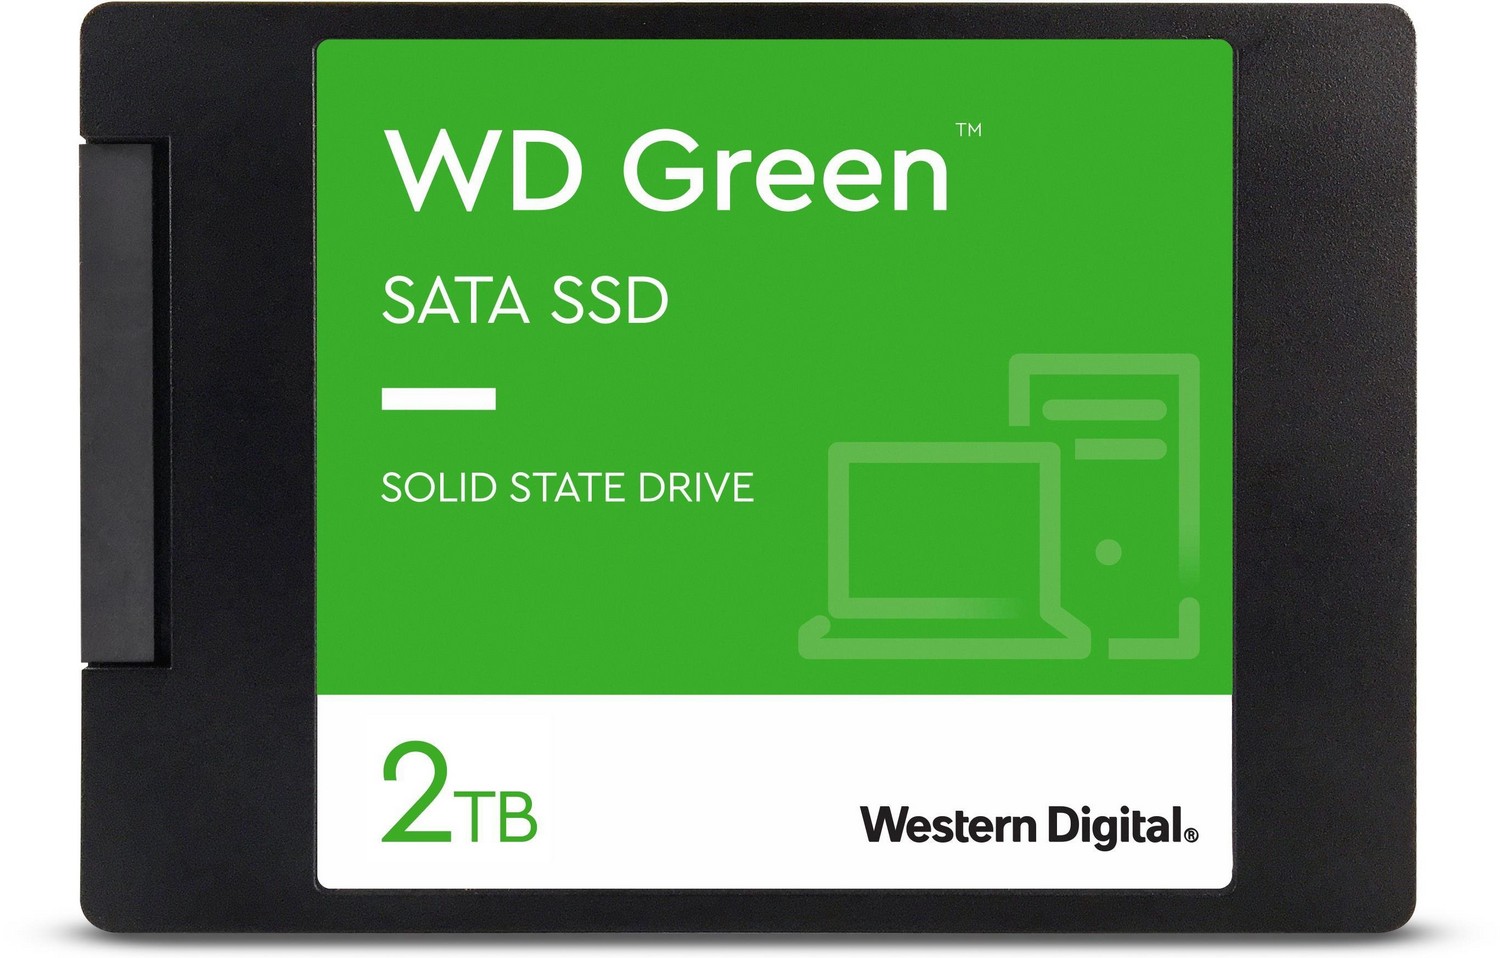 Cakera SSD - WD Green SSD 2TB